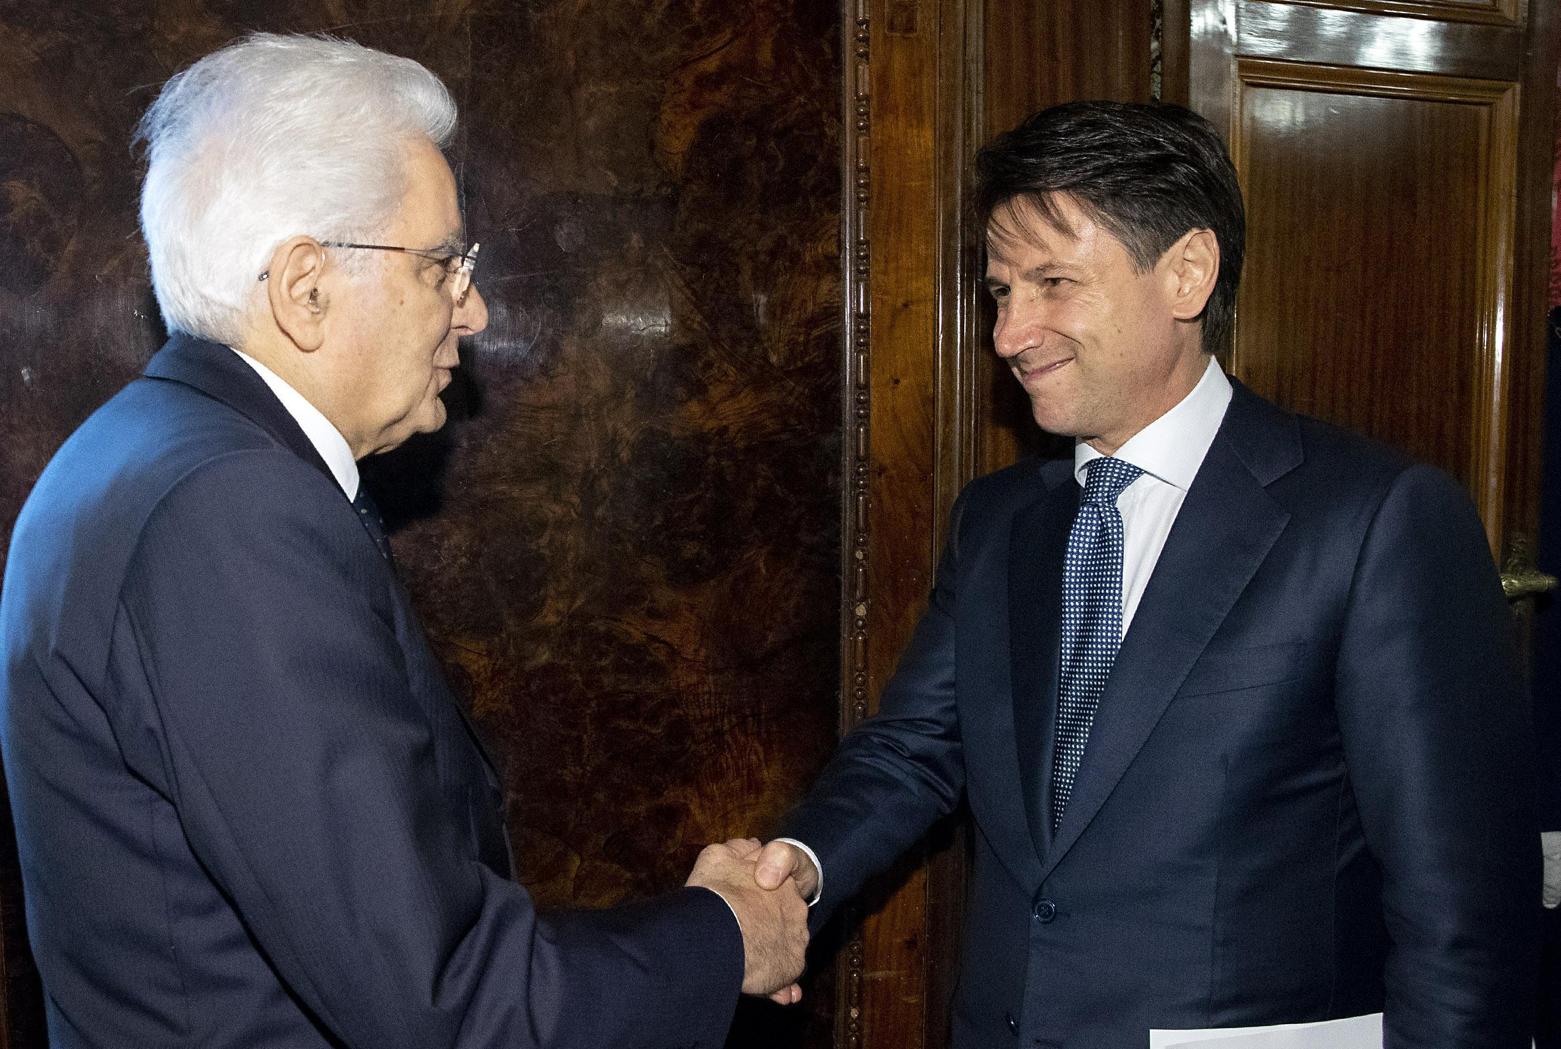 Il Capo dello Stato Sergio Mattarella insieme a Giuseppe Conte, presidente del Consiglio incaricato.